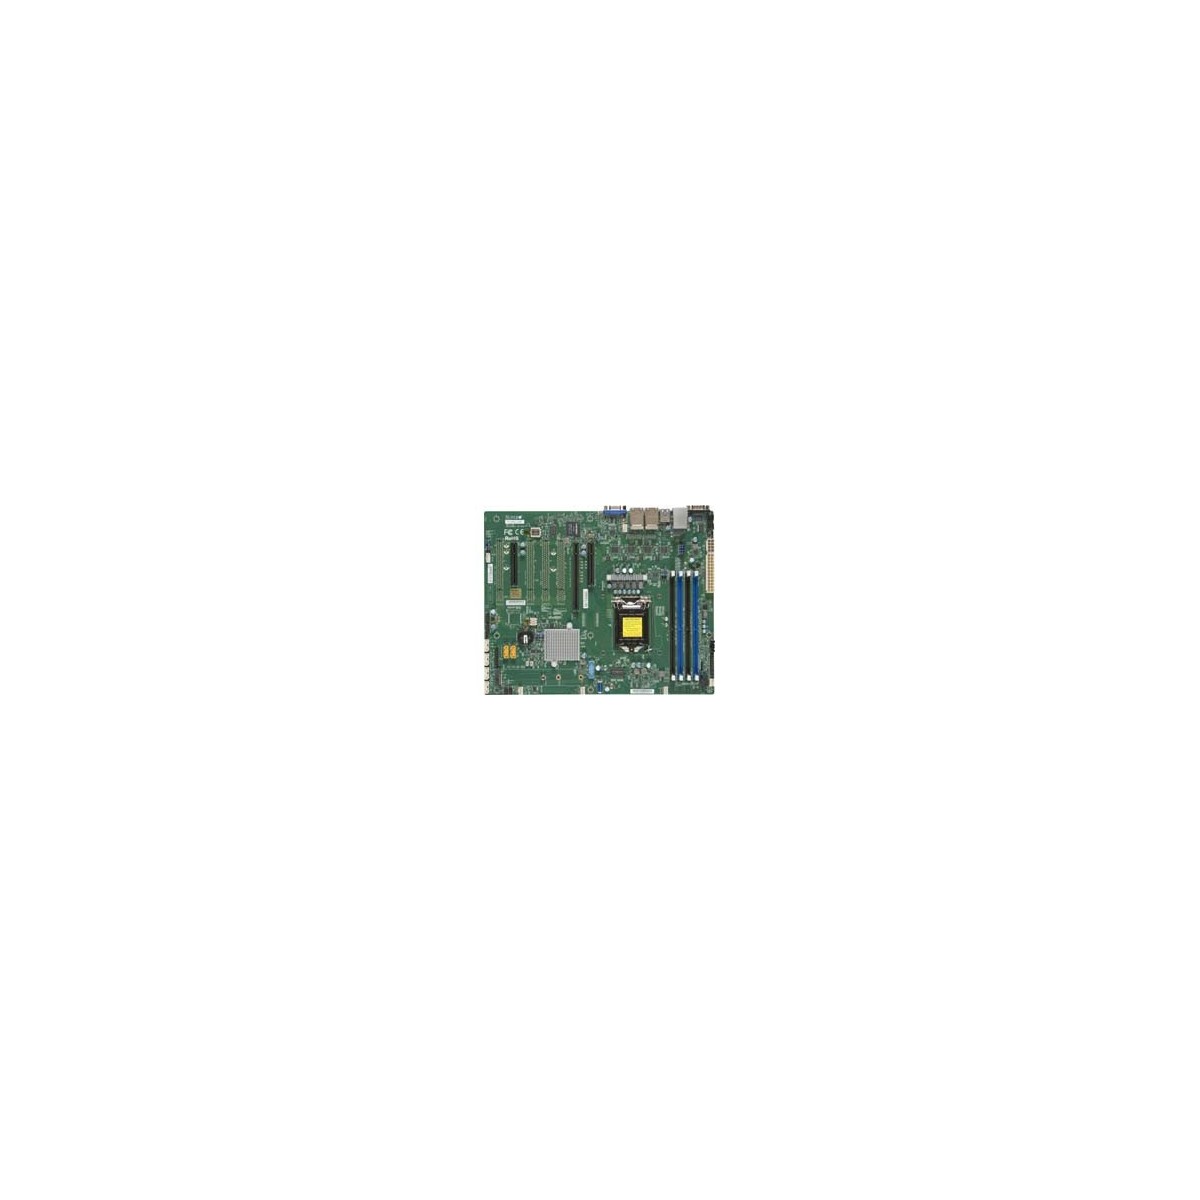 Supermicro X11SSI-LN4F-B C236 DDR4 ATX - Motherboard - Intel Socket 1151 (Core i)